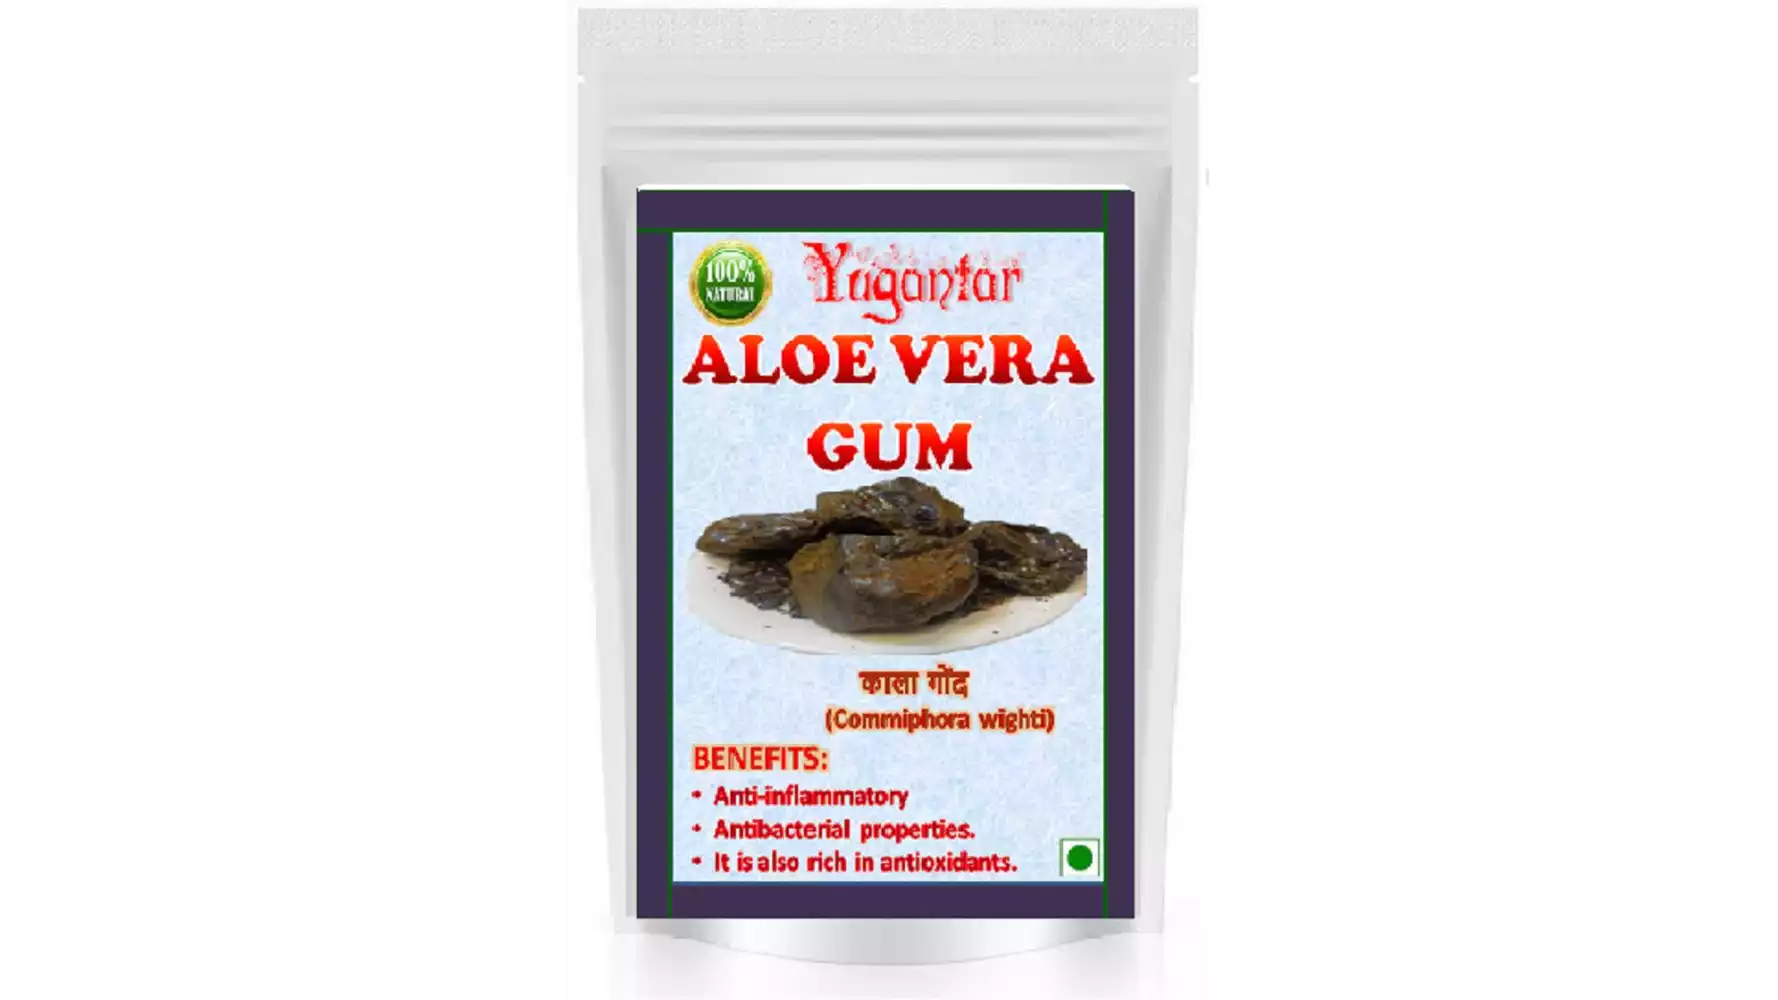 Yugantar Aloe Vera Gum (300g)